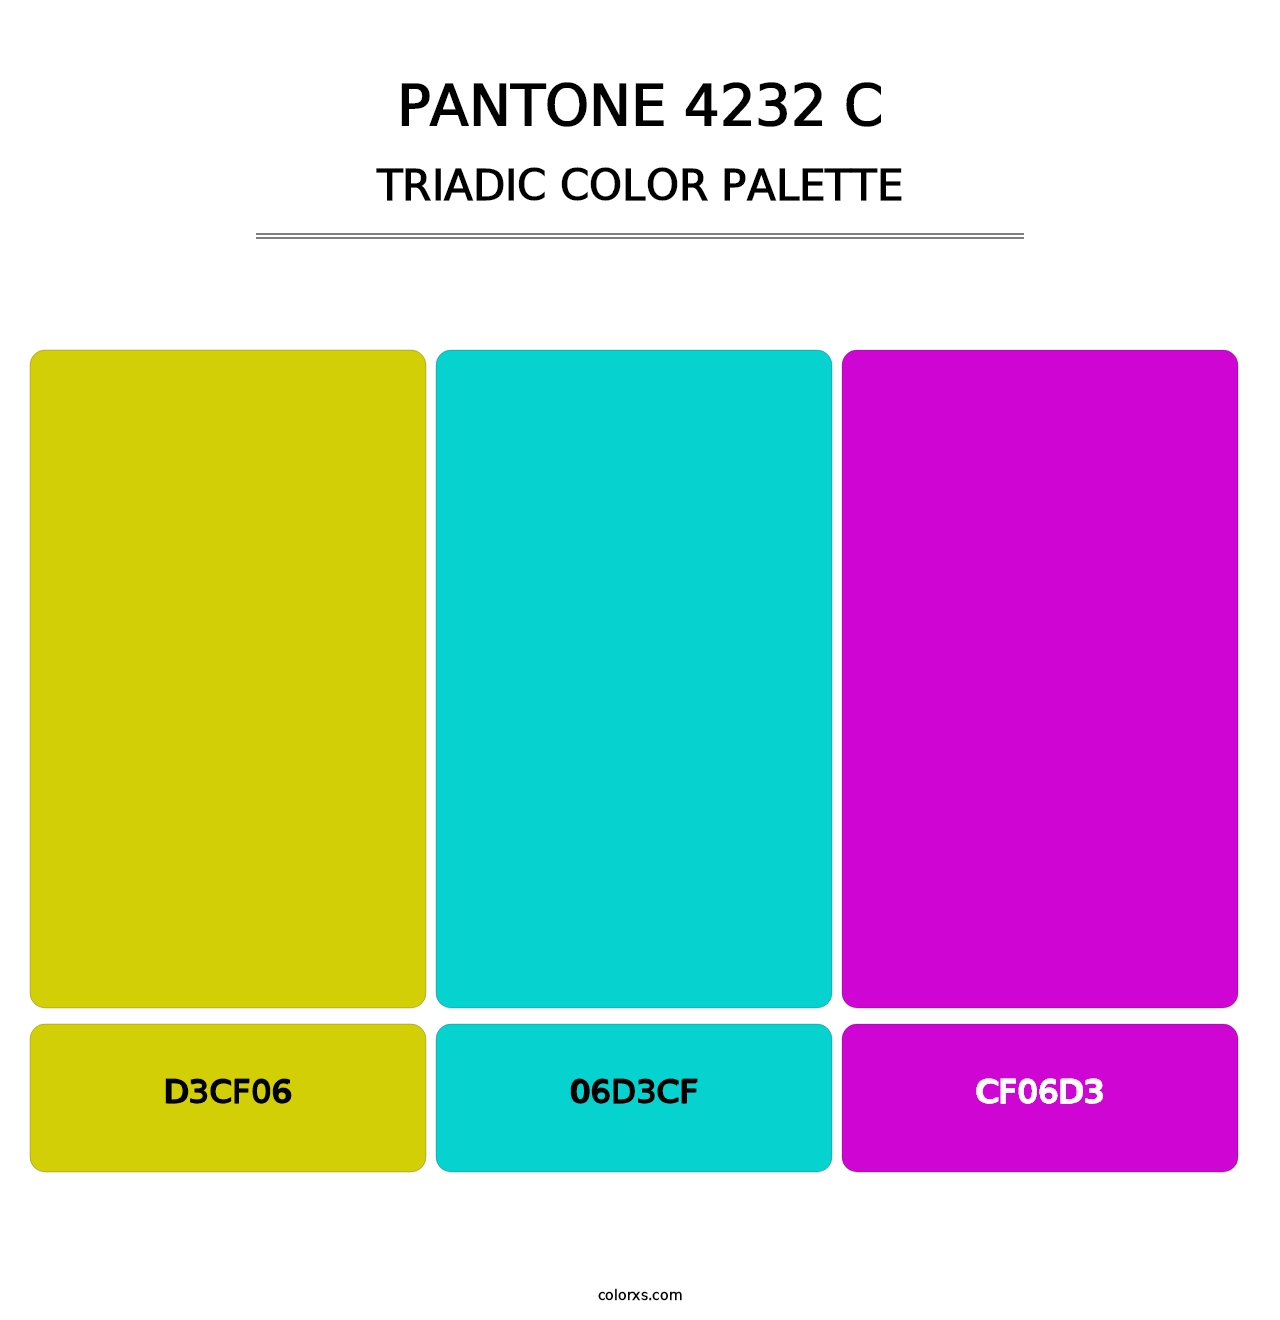 PANTONE 4232 C - Triadic Color Palette